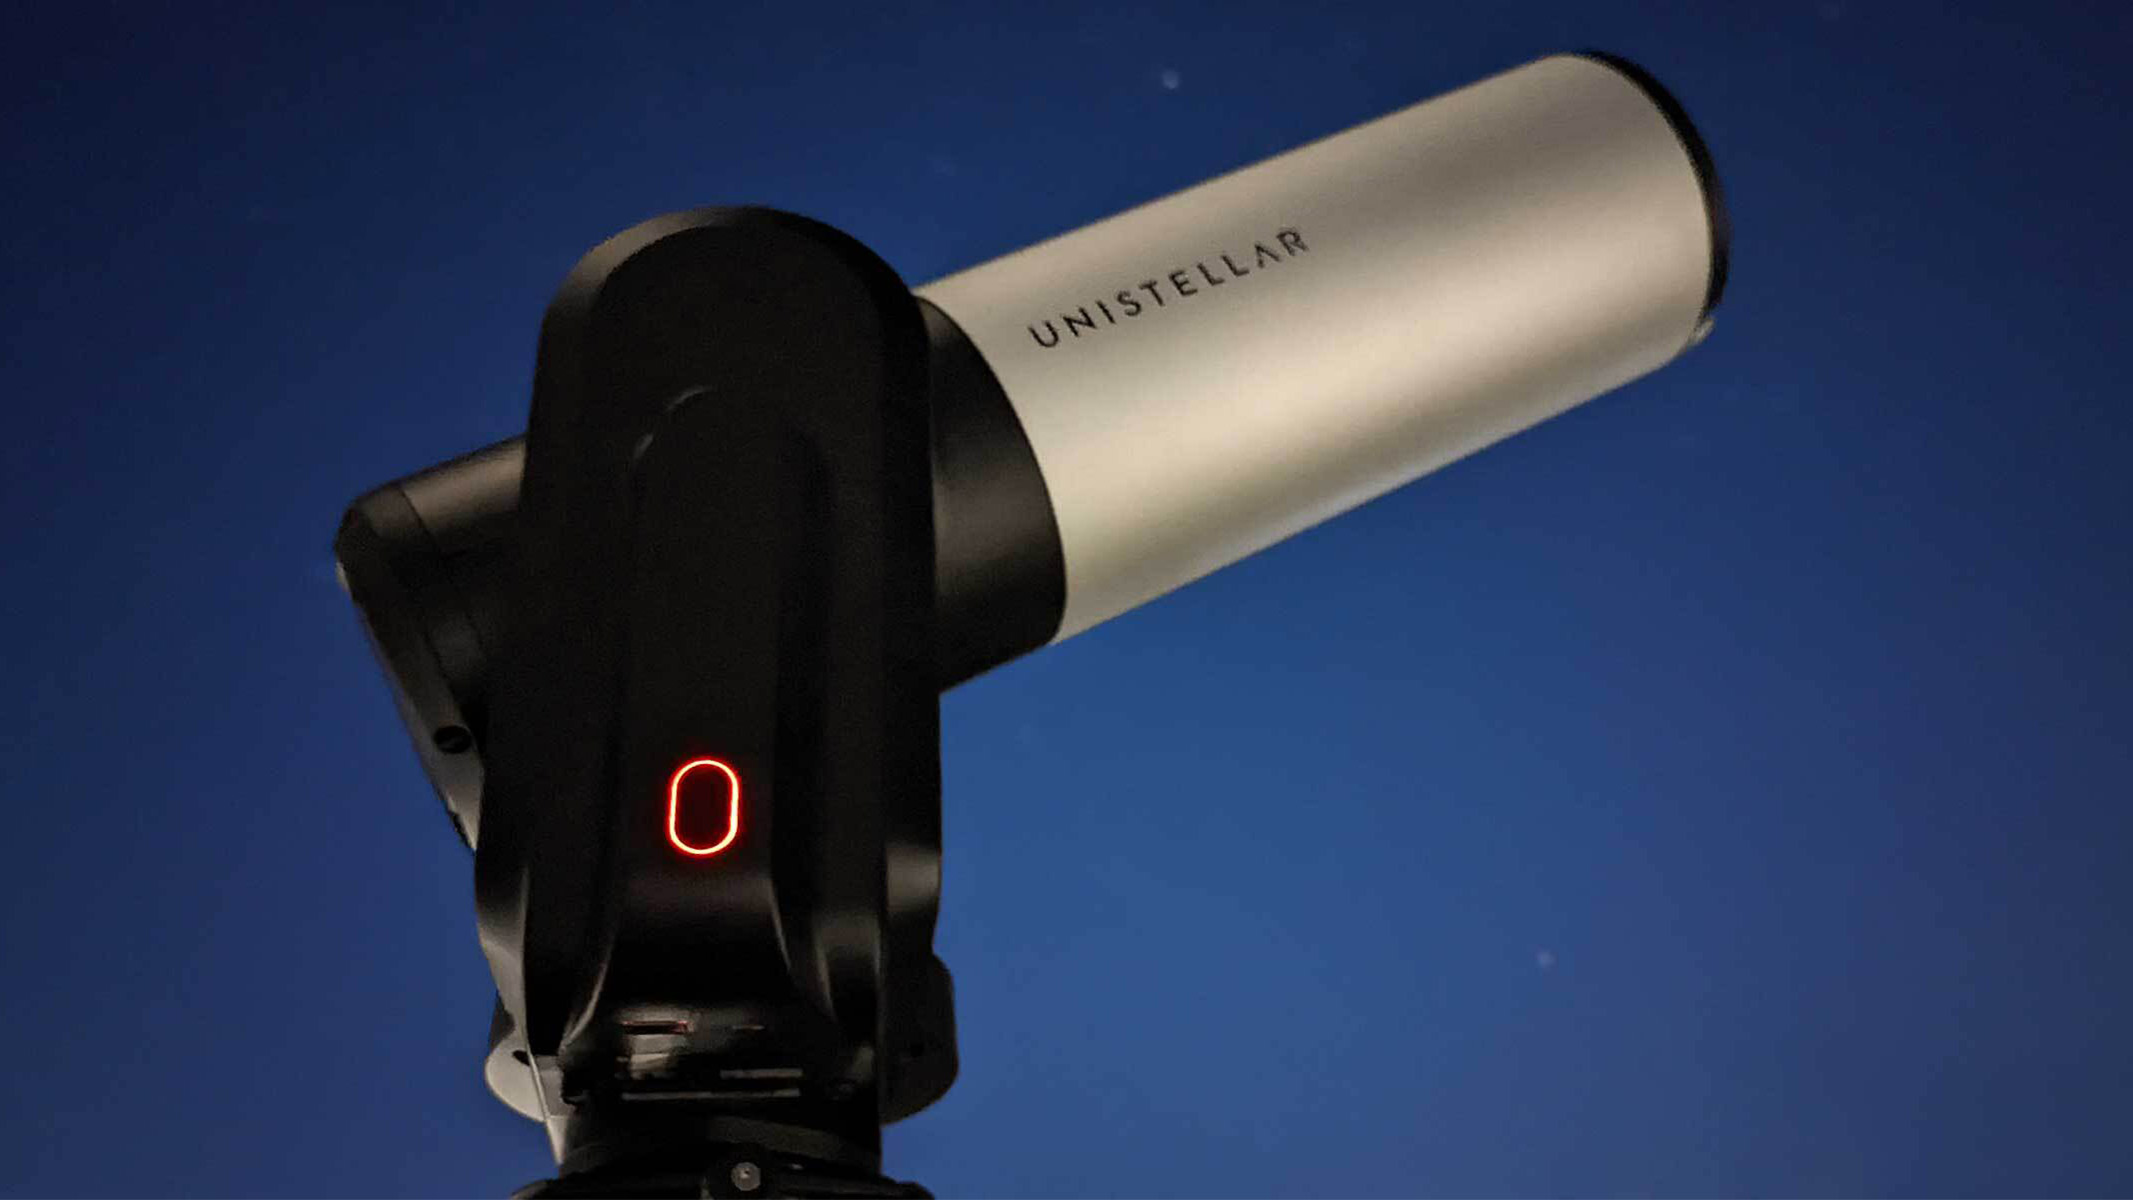 Test photo of the Unistellar evscope 2